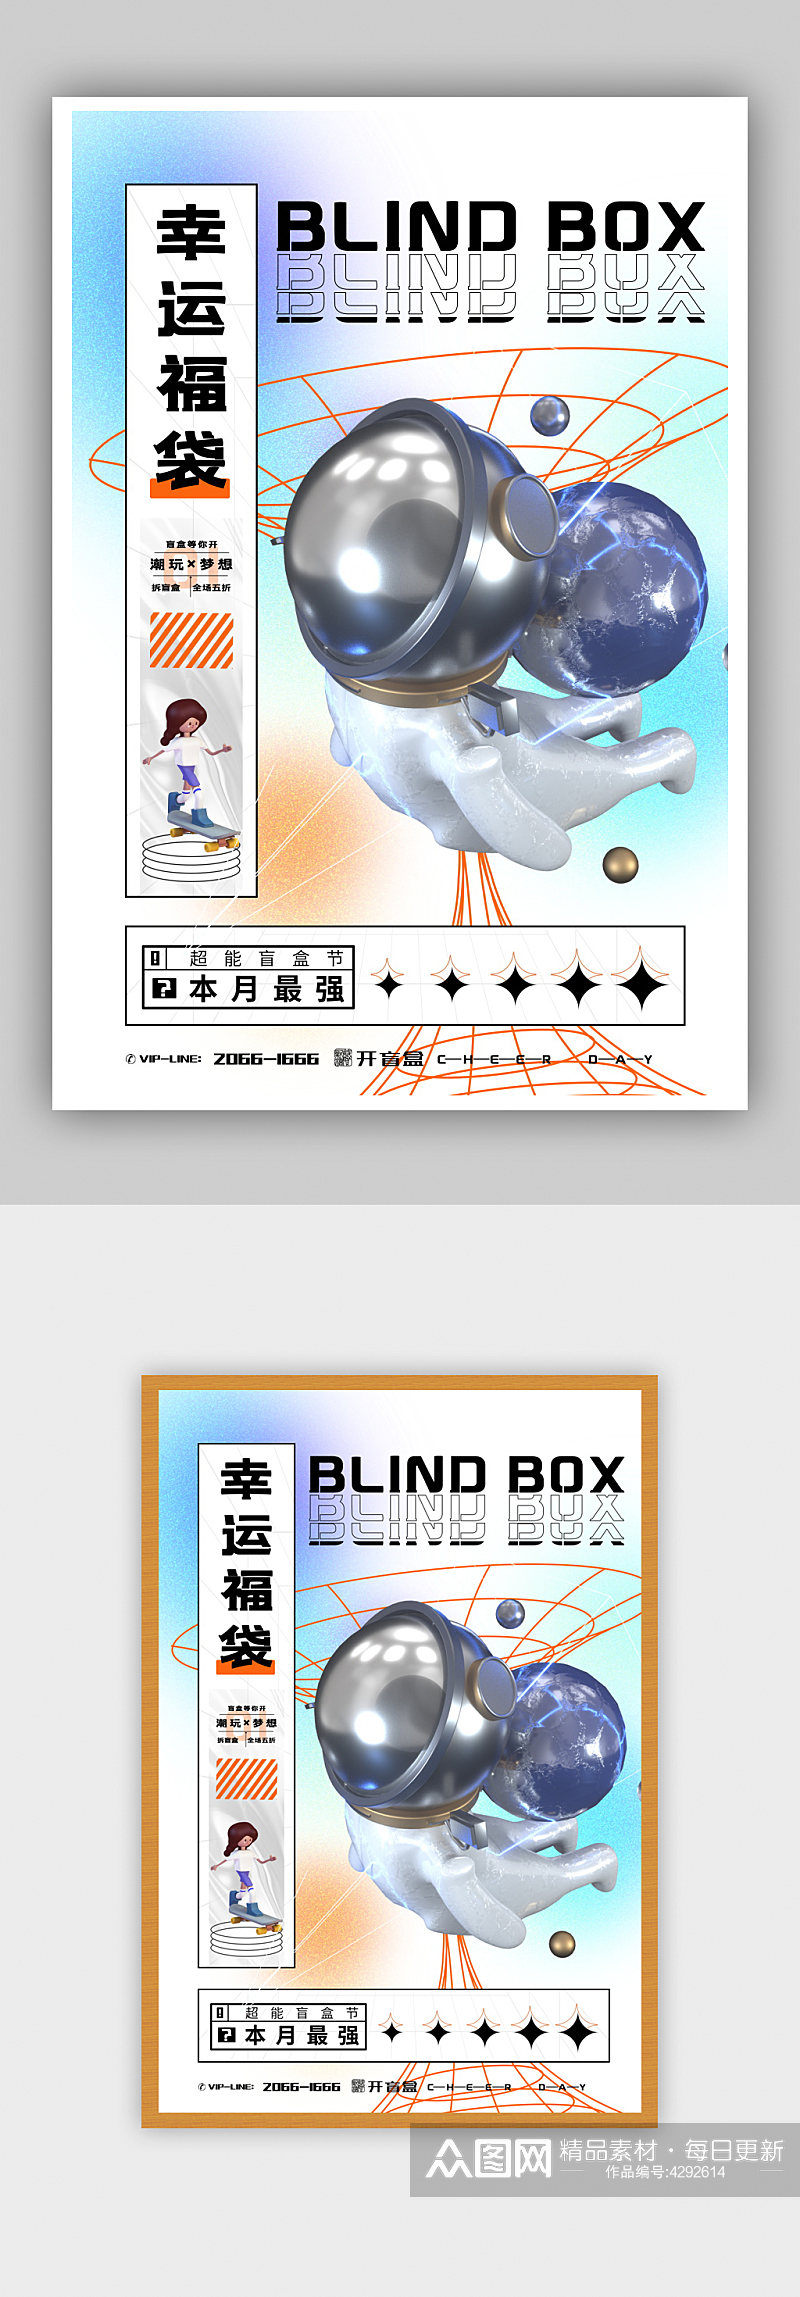 梦幻创意幸运福袋盲盒创意海报素材